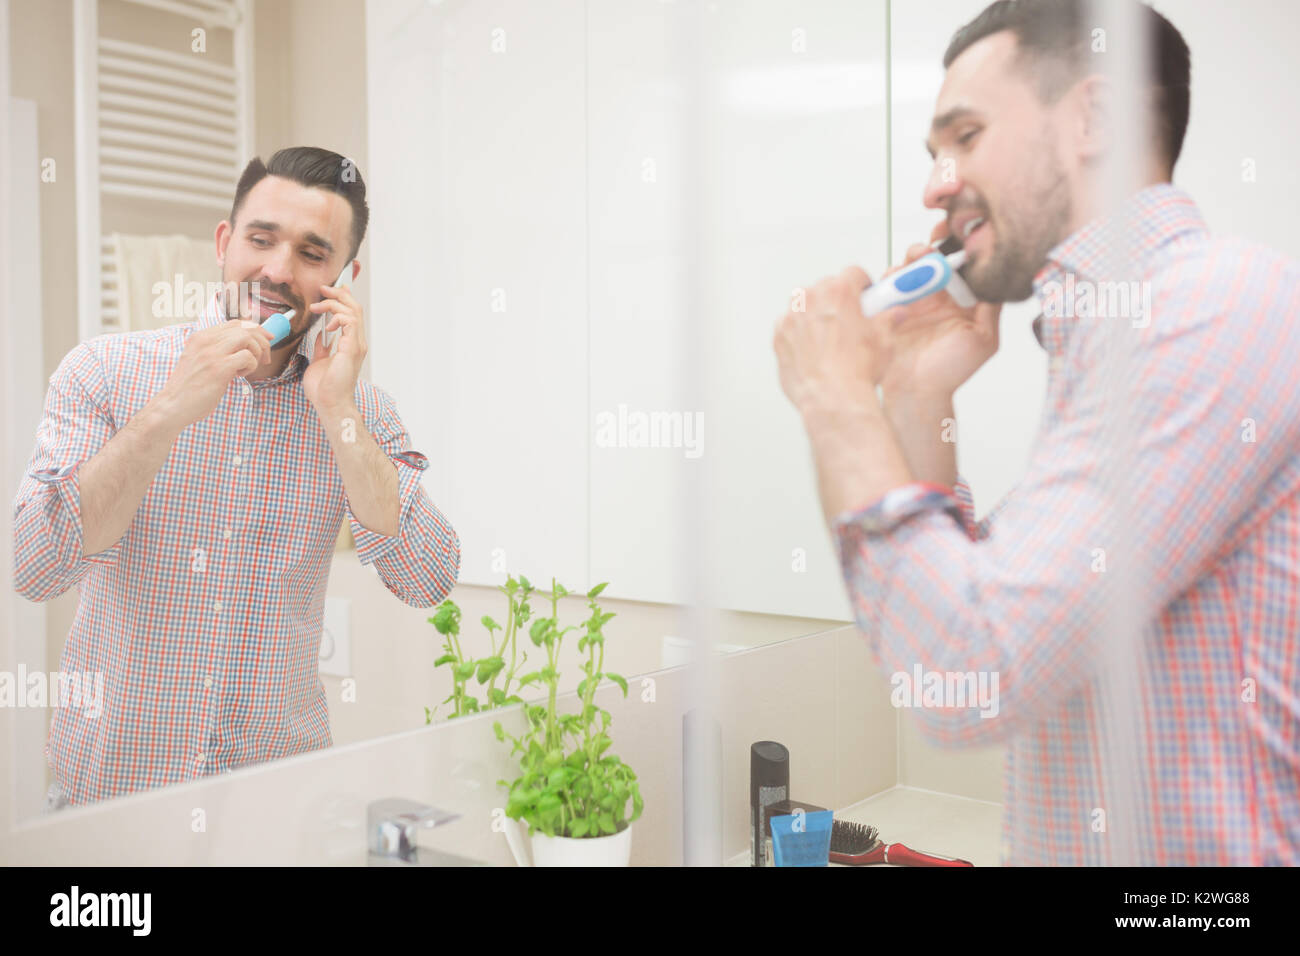 Attarctive l'homme ayant une conversation téléphonique pendant le brossage des dents. Agréable salle de bains est bien éclairée. L'homme est visible dans le miroir de la réflexion. Banque D'Images